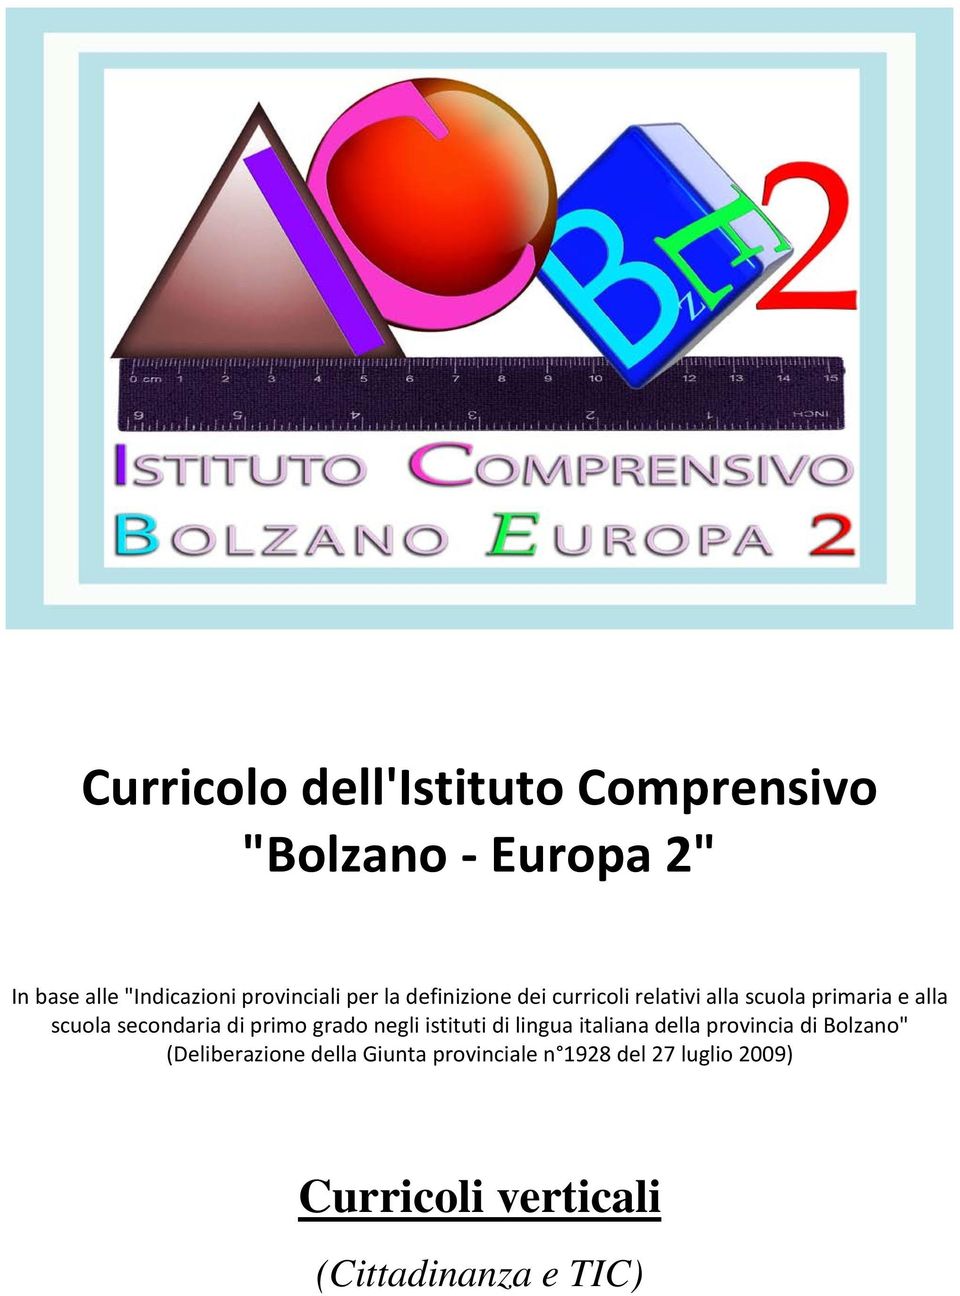 secondaria di primo grado negli istituti di lingua italiana della provincia di Bolzano"